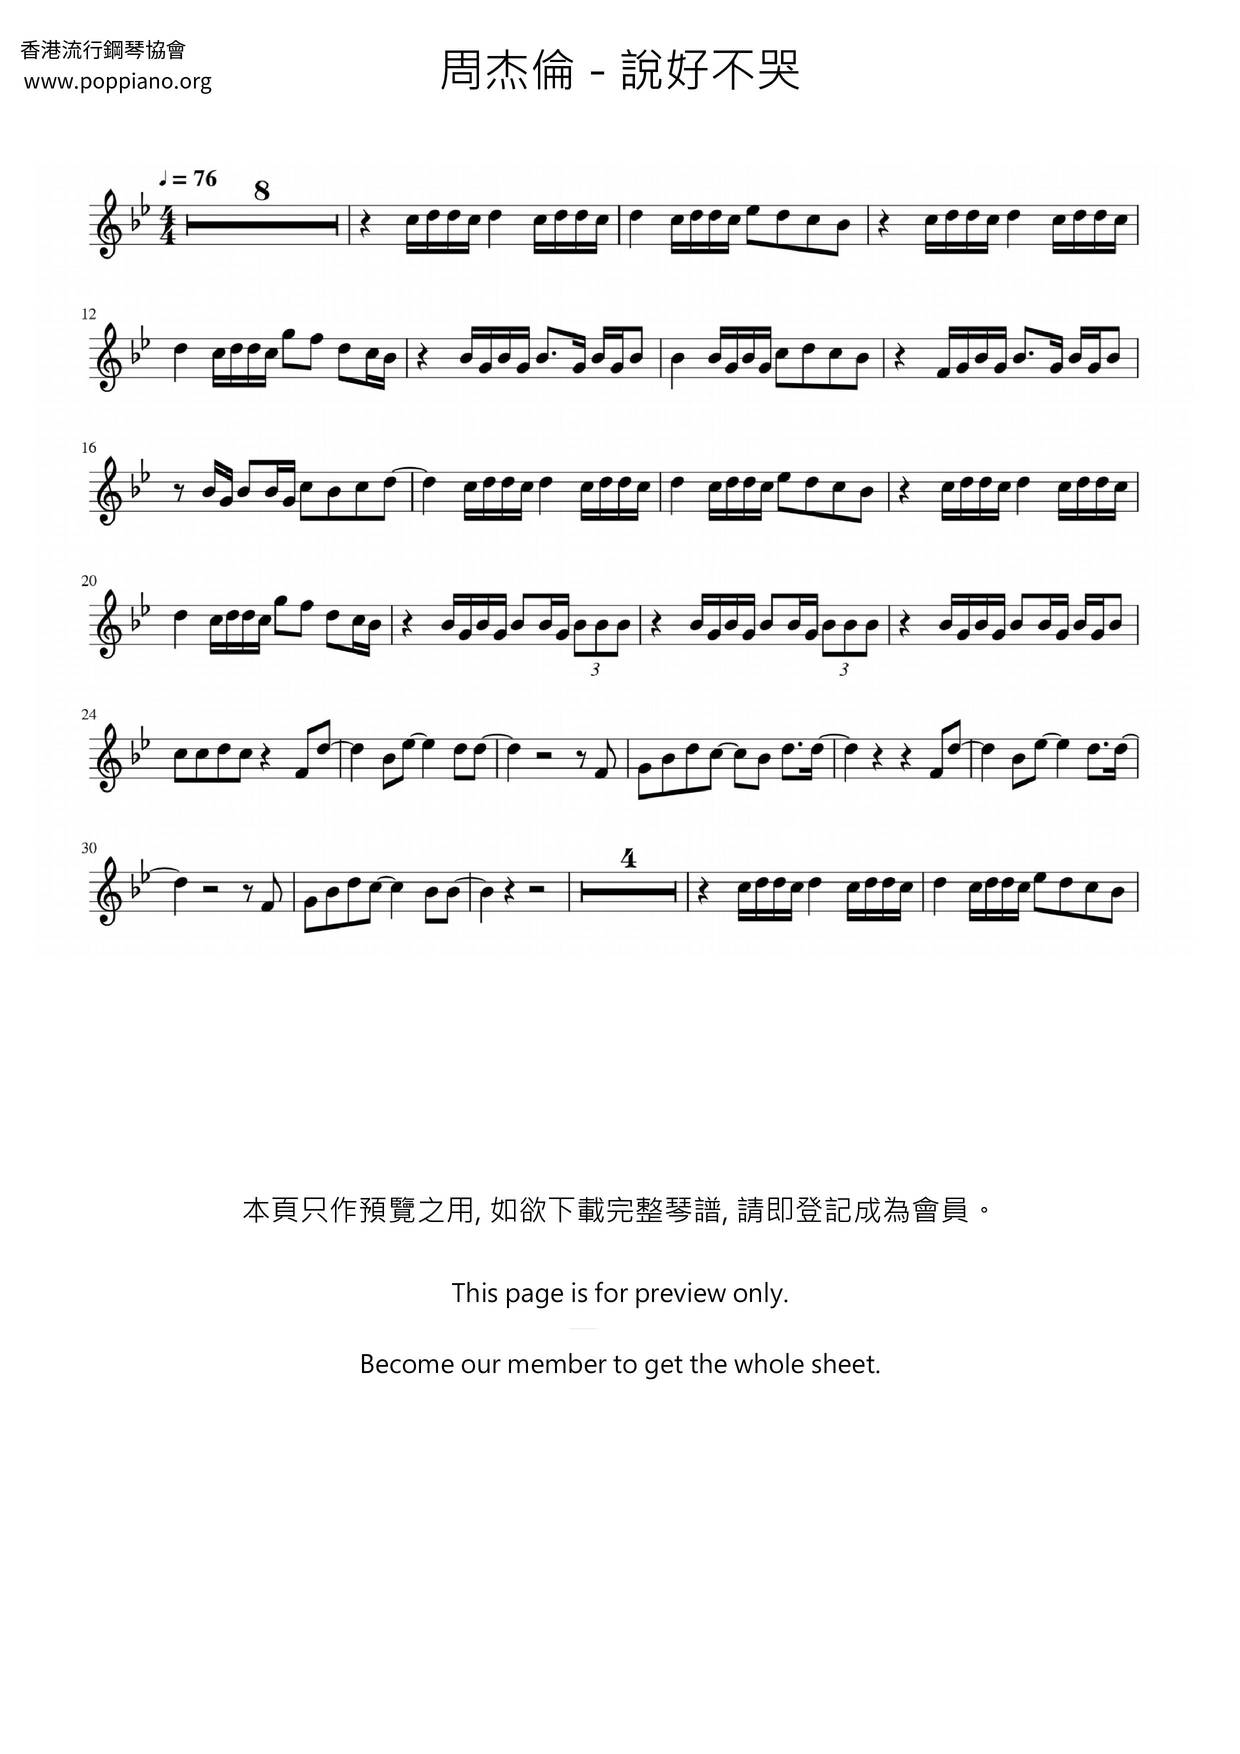 周杰伦-说好不哭 琴谱/五线谱pdf-香港流行钢琴